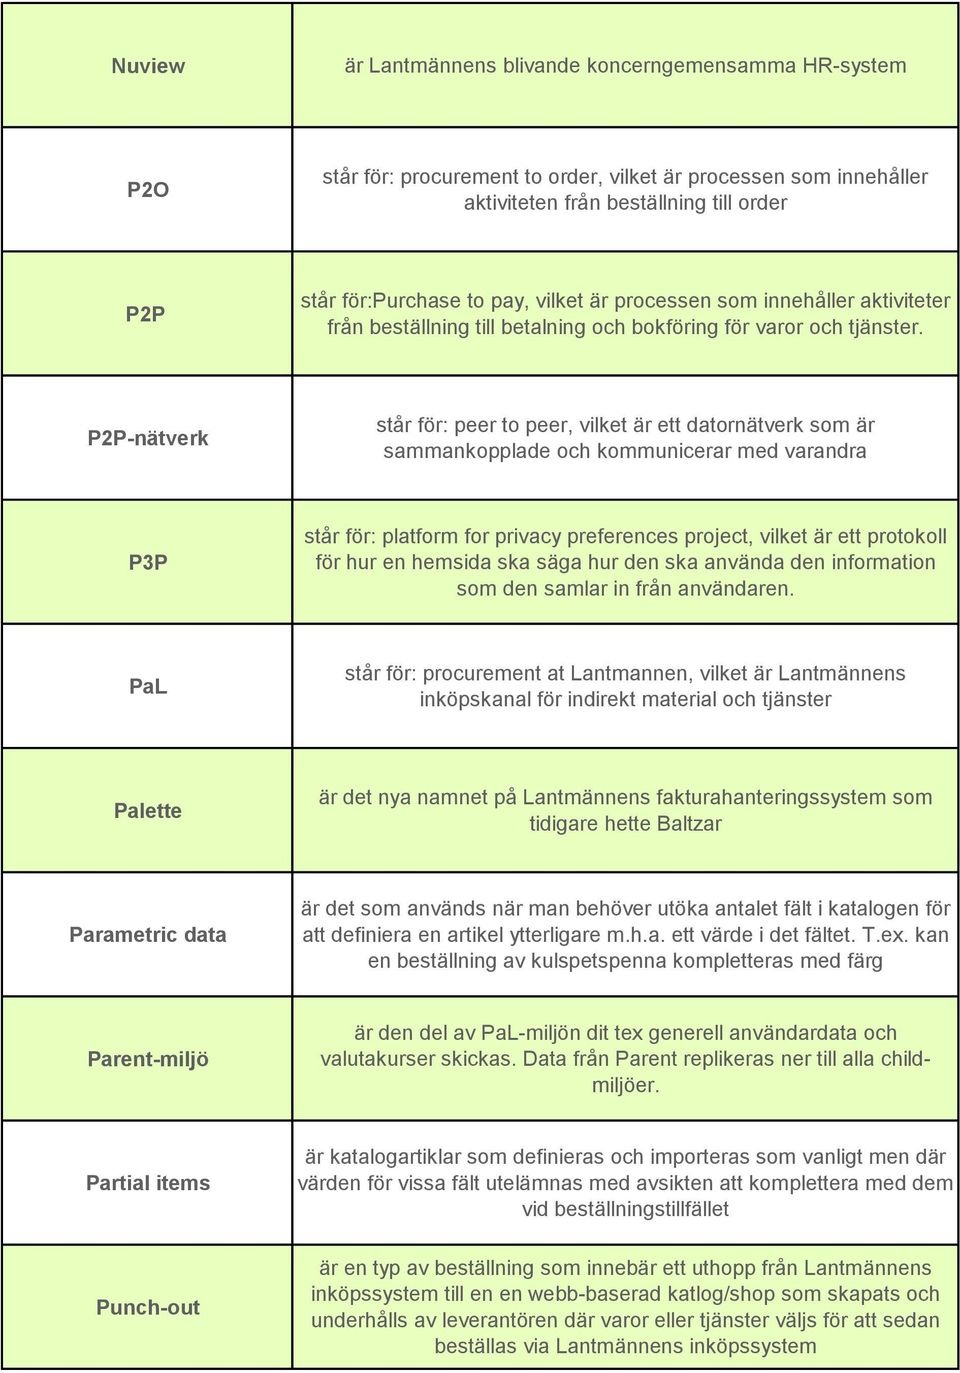 P2P-nätverk står för: peer to peer, vilket är ett datornätverk som är sammankopplade och kommunicerar med varandra P3P står för: platform for privacy preferences project, vilket är ett protokoll för